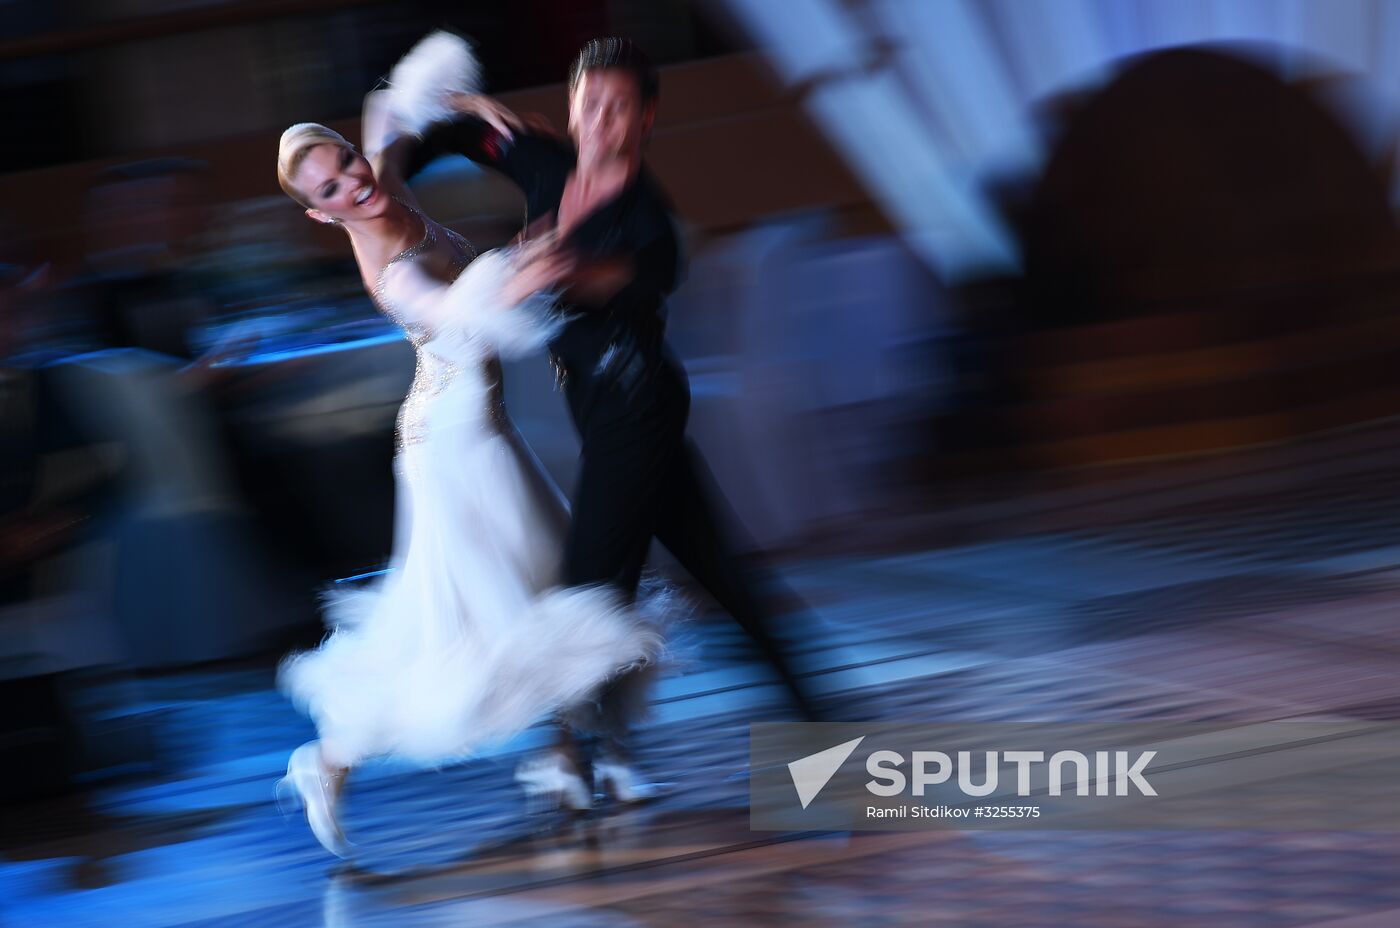 60th anniversary of dancesport in Russia